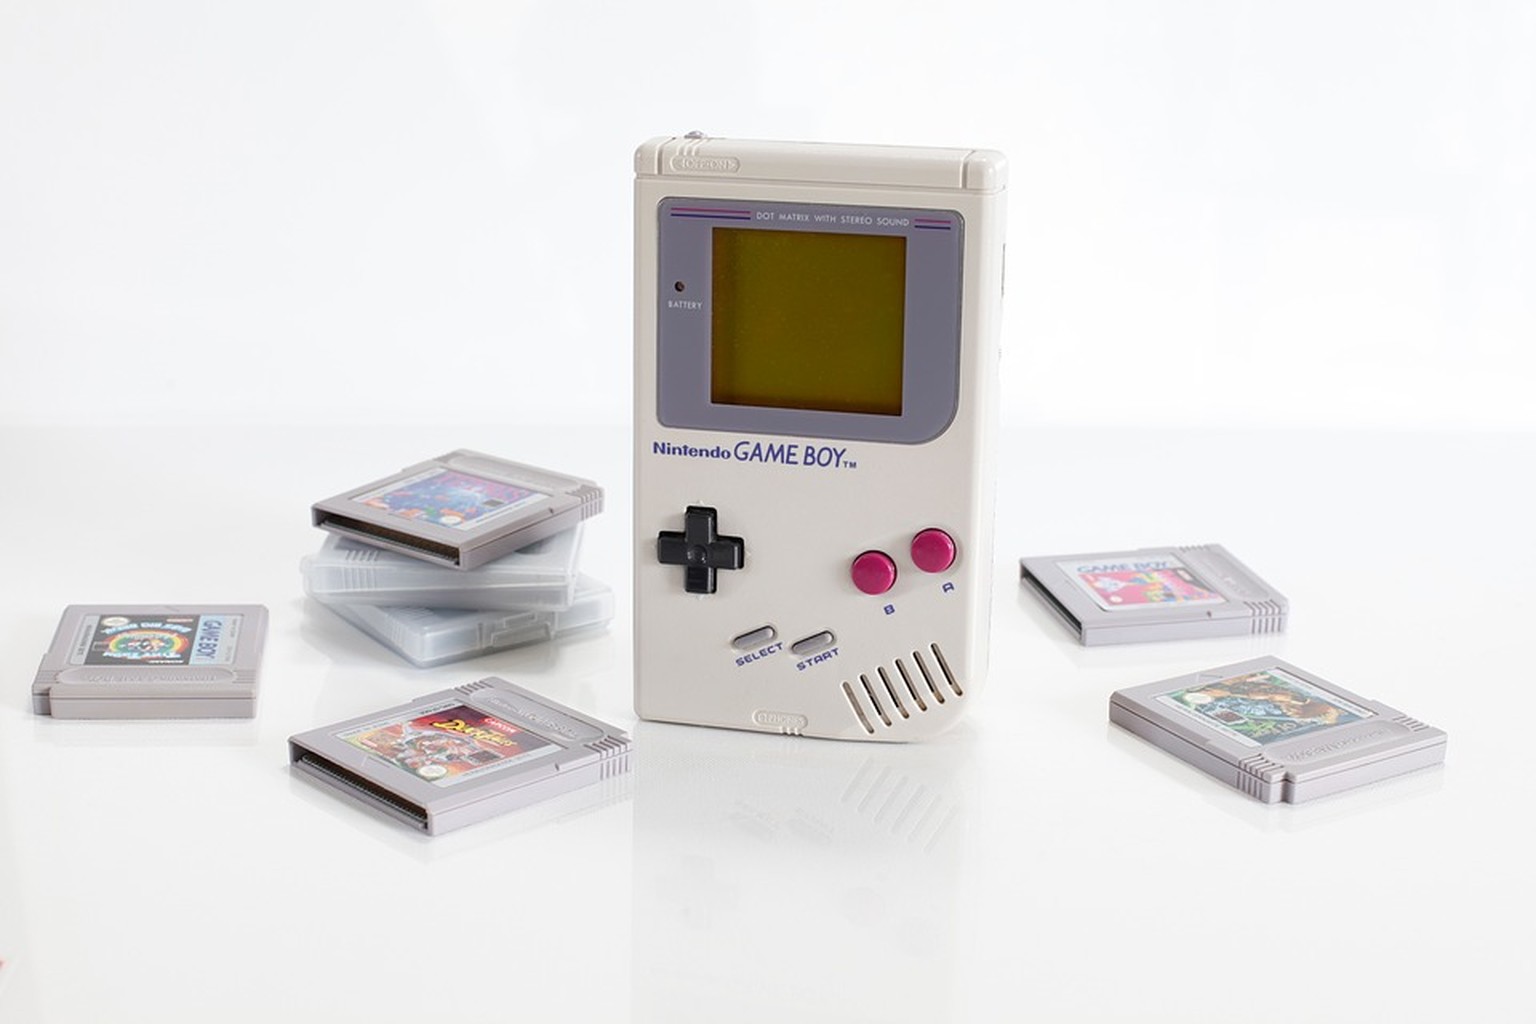 Der erste Game Boy war für viele ein Einstiegsgerät in die Videospielkultur.